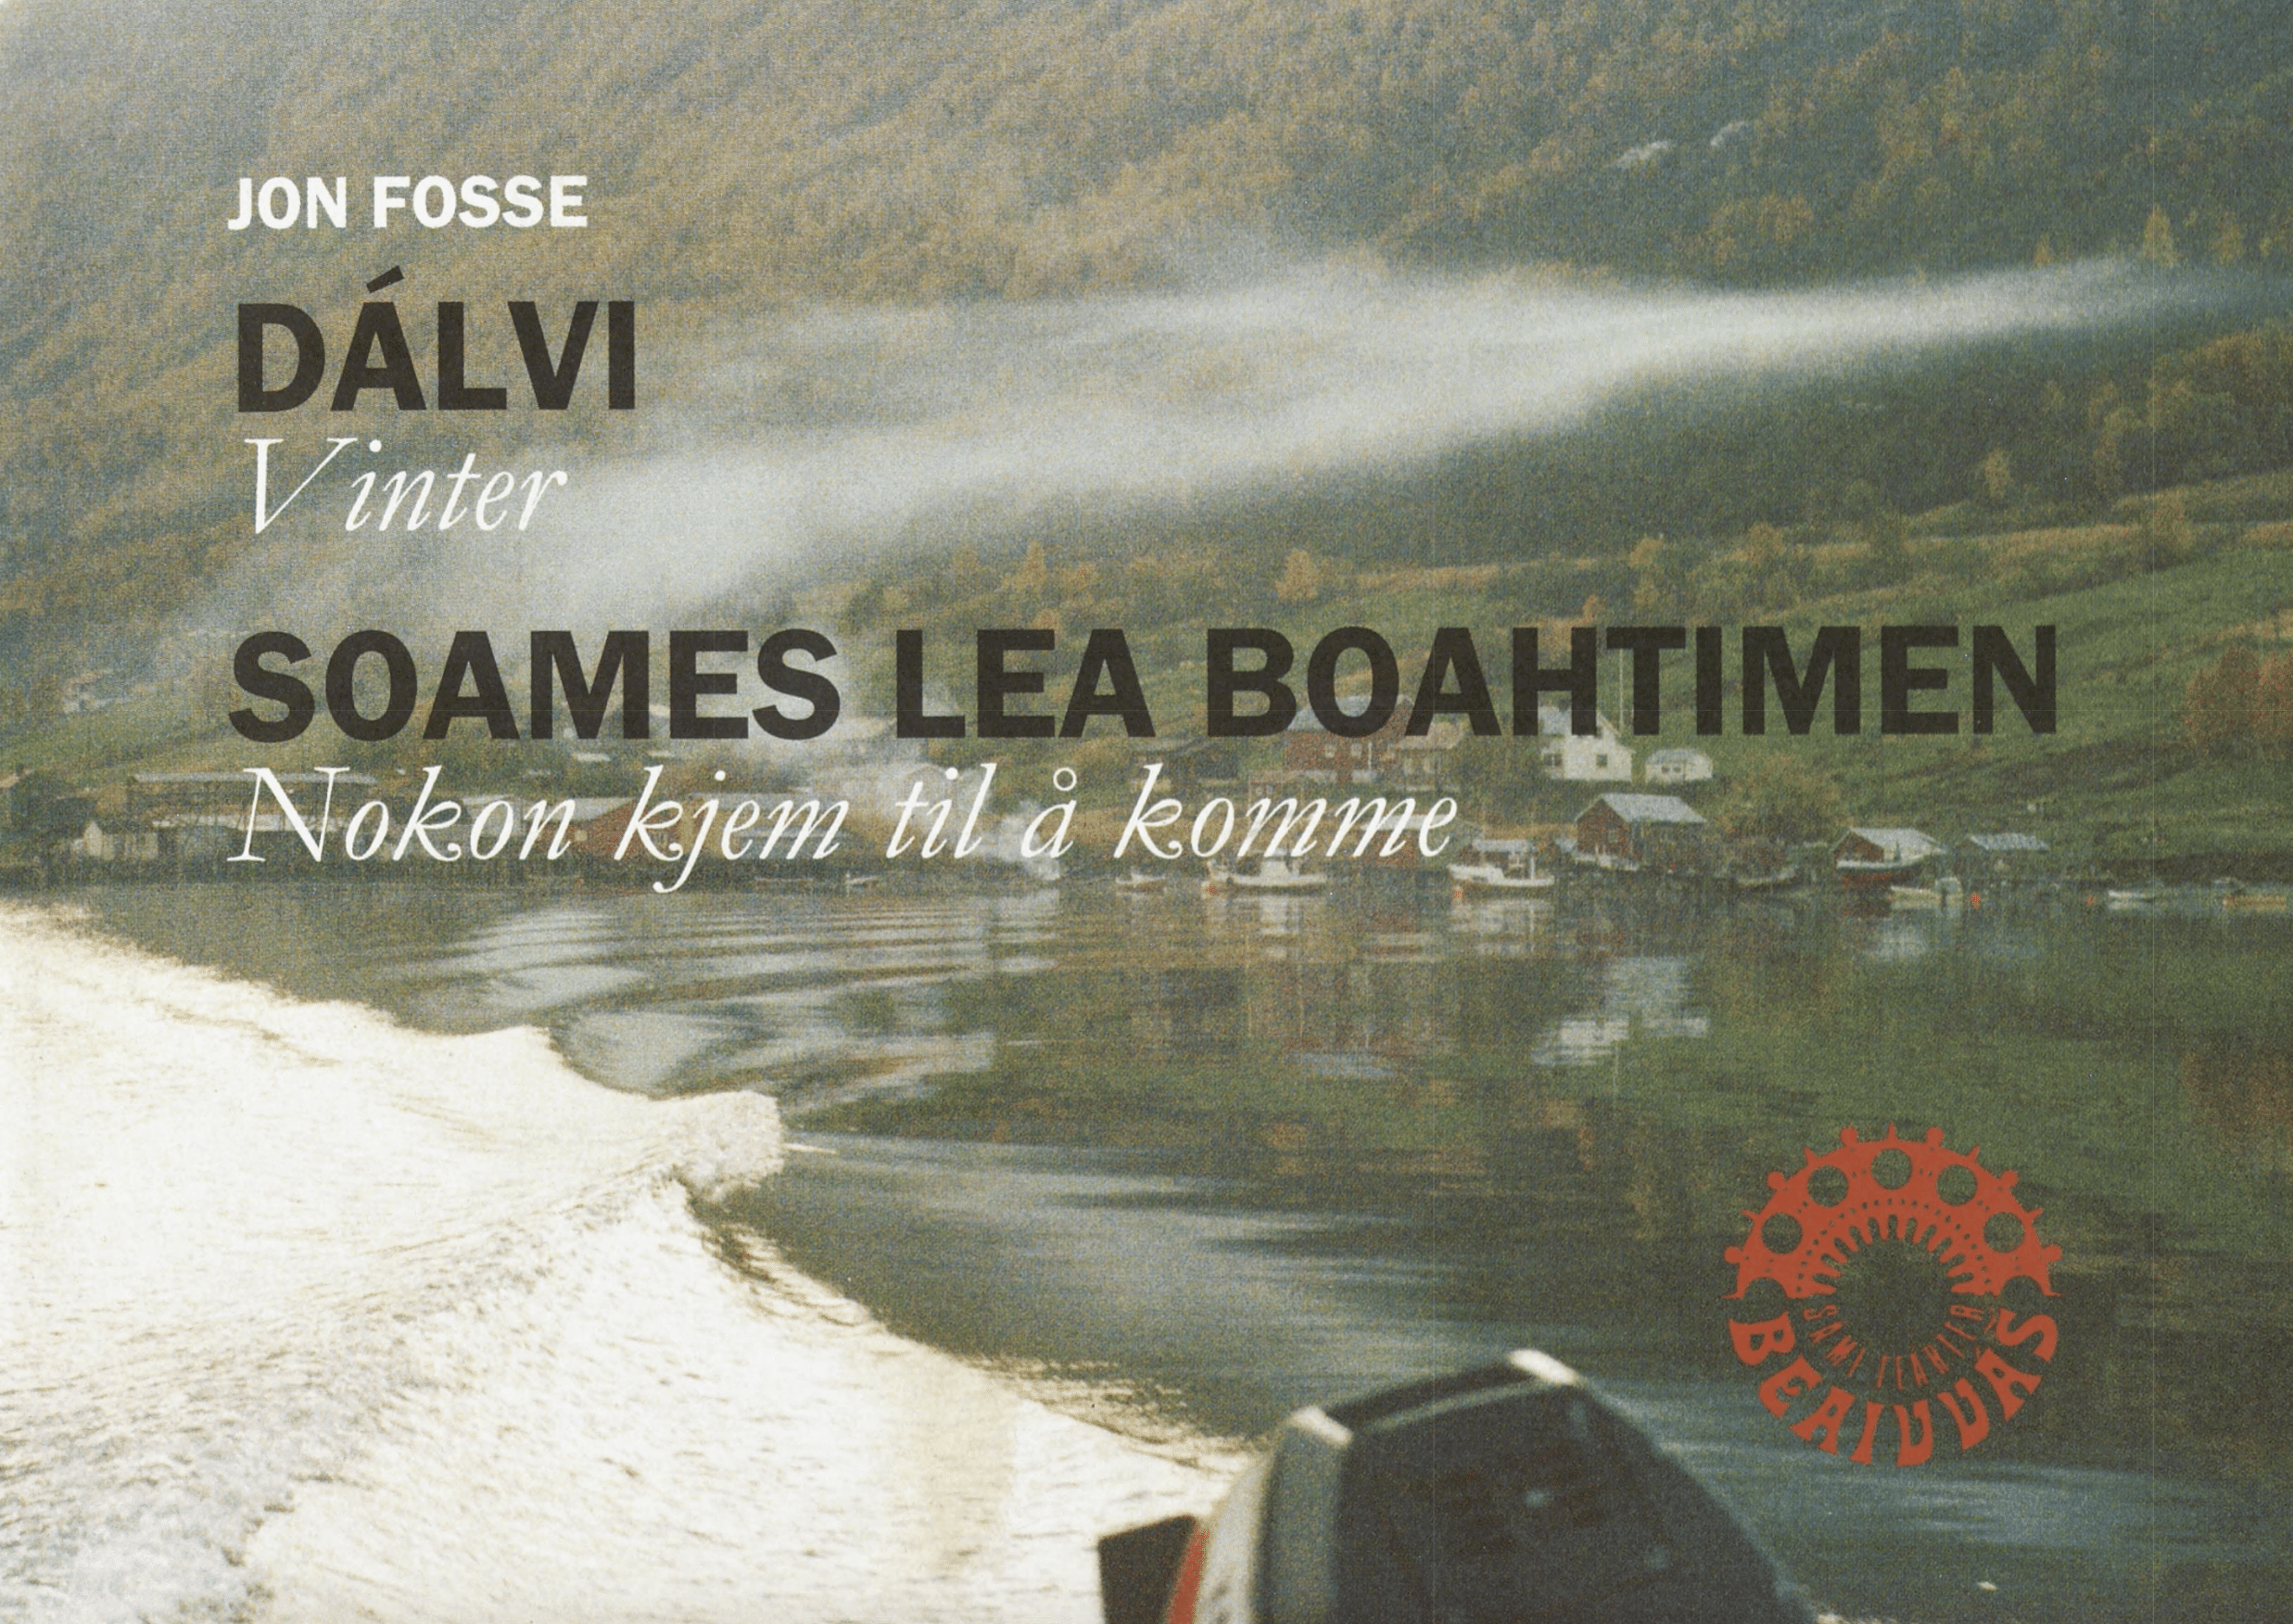 Teaterprogram Vinter og Nokon kjem til å komme satt opp på det samiske nasjonalteatret (Beaivváš Sámi Našunálateáhter) i 2005